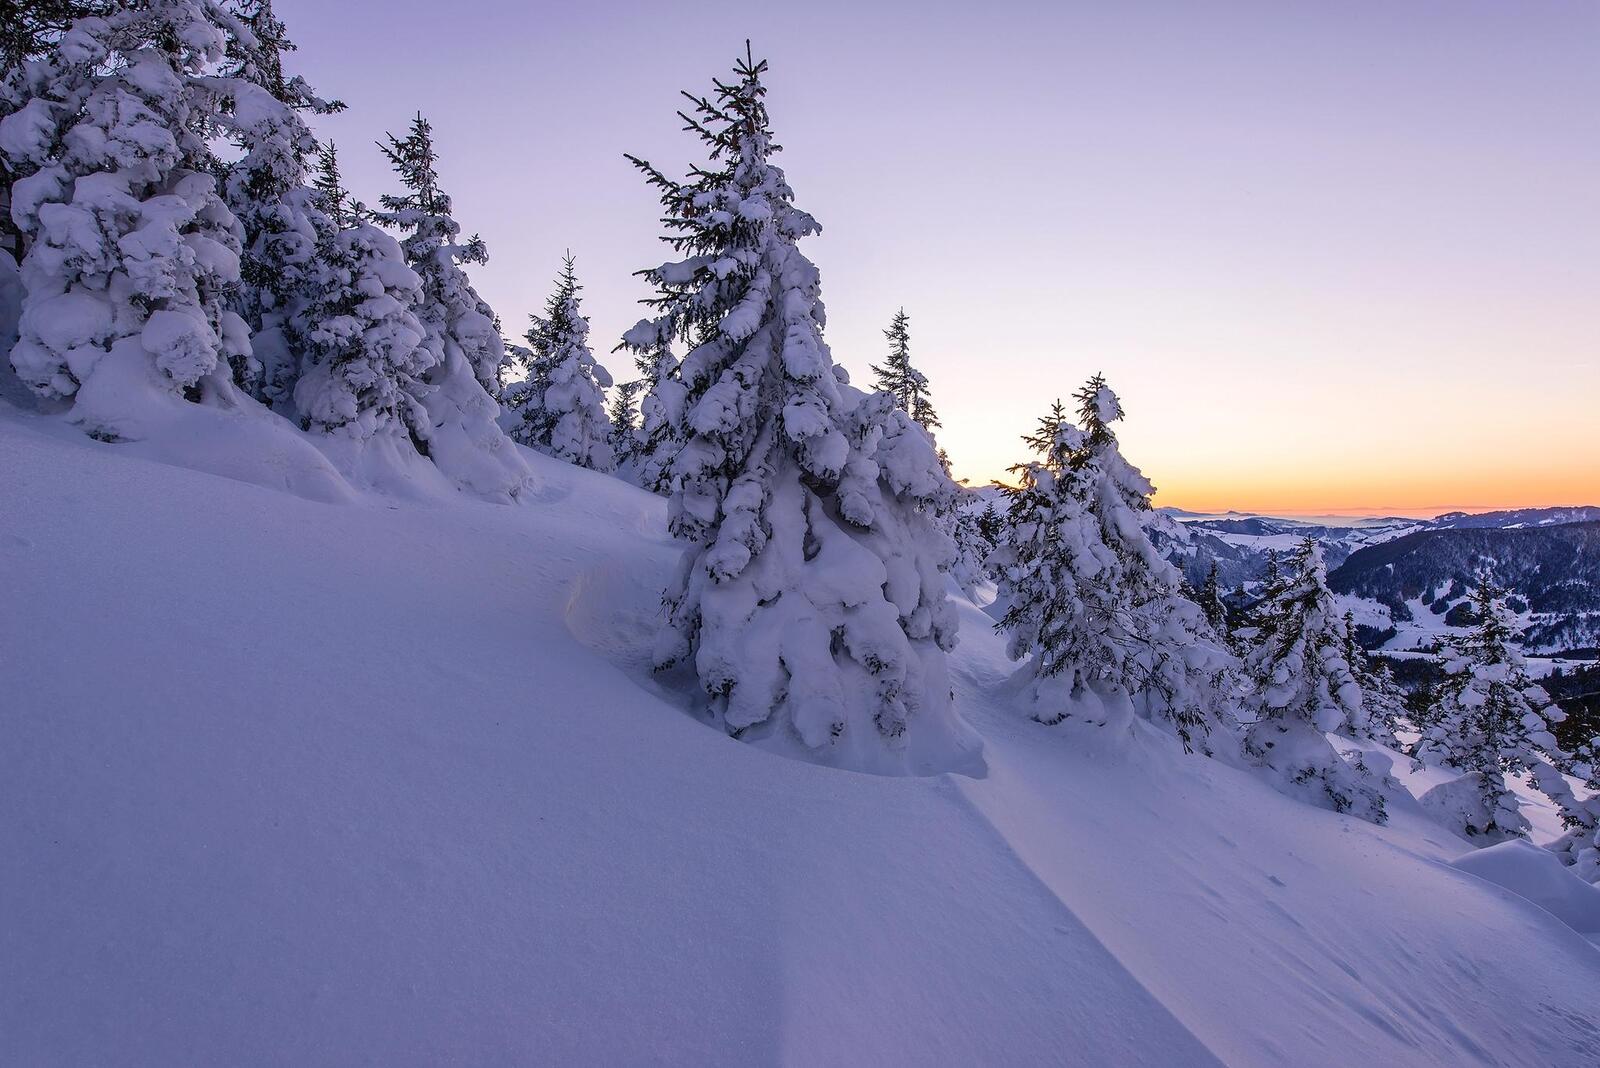 免费照片下载关于冬季、日落的精美屏幕保护程序